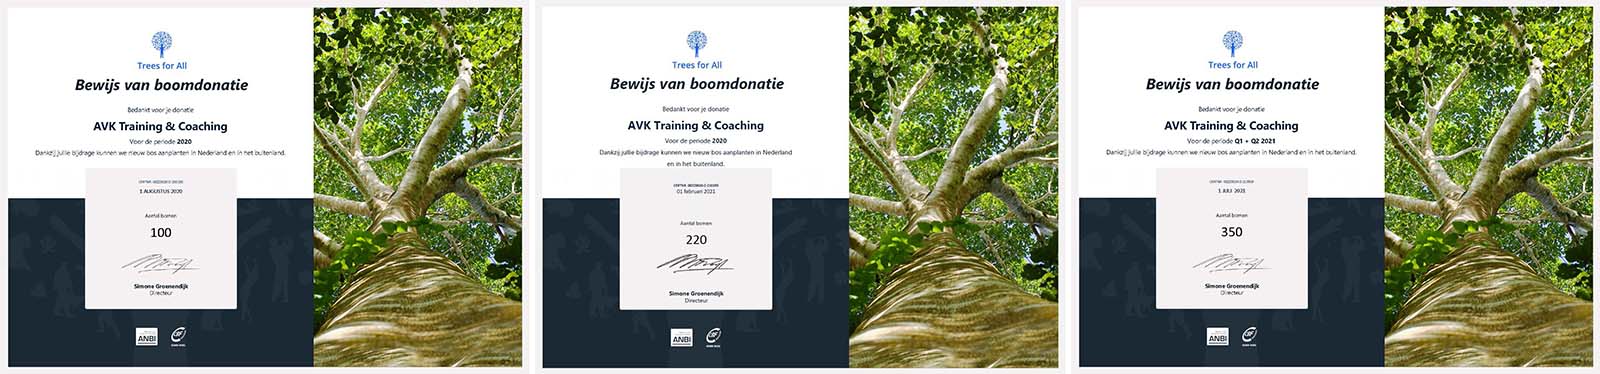 Certificaten Trees For All 2020 - 2021